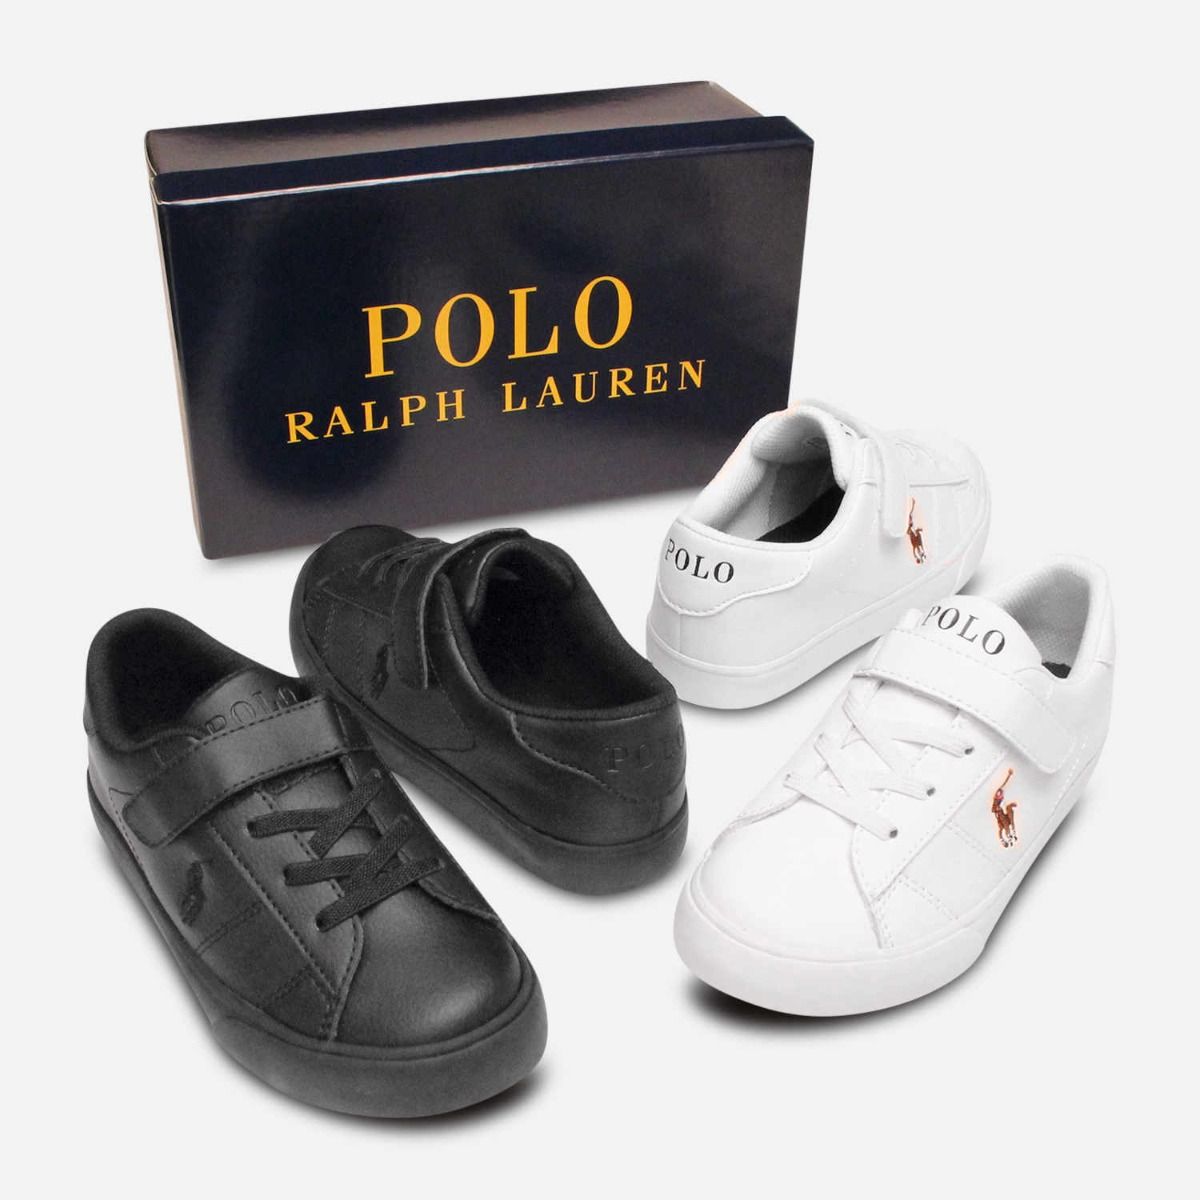 polo ralph lauren school shoes